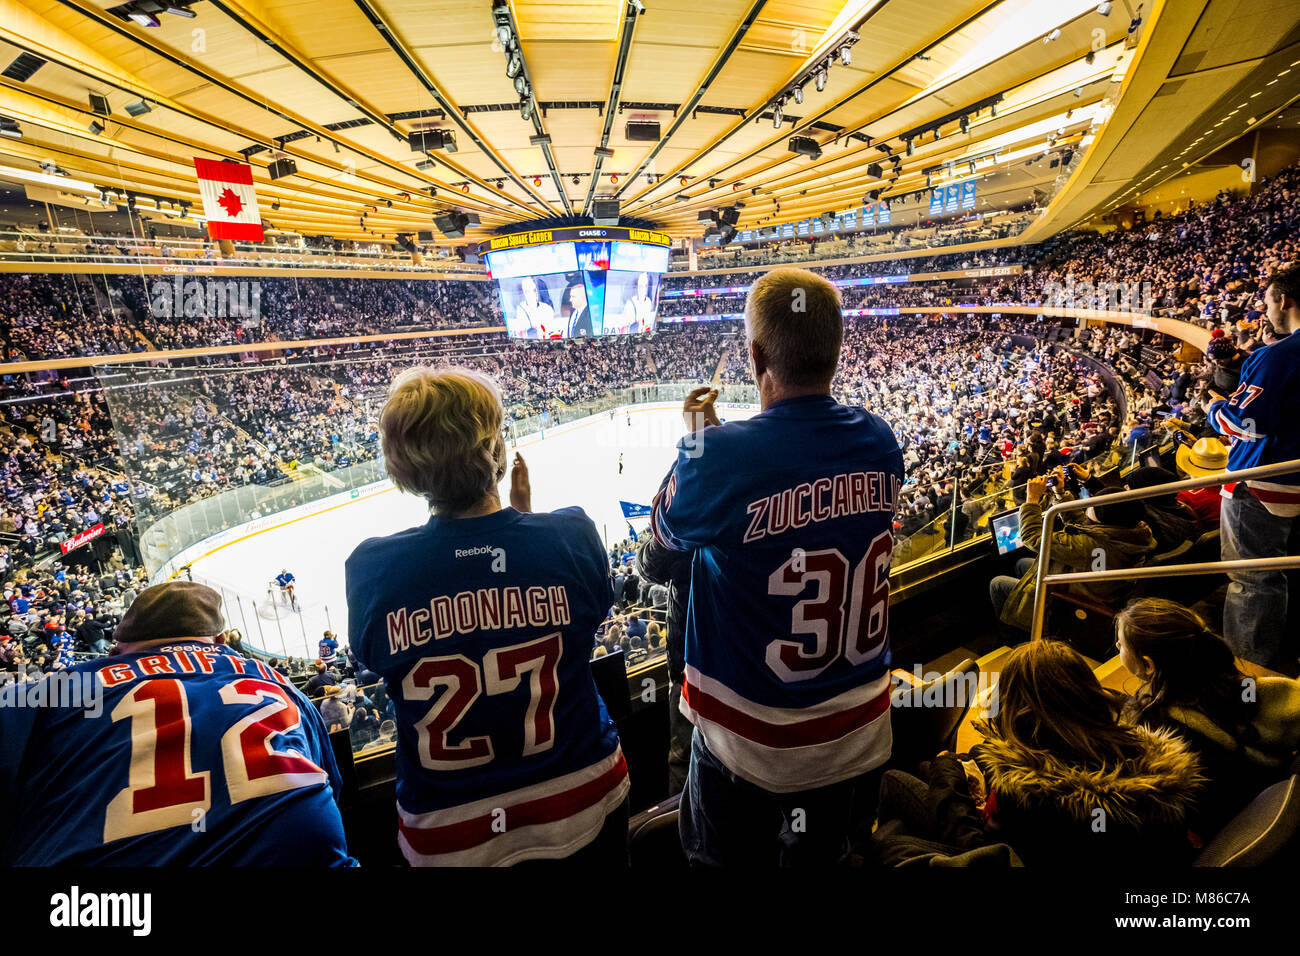 Les spectateurs à regarder le hockey sur glace match au Madison Square Garden, à Manhattan, New York City, New York State, USA Vs Rangers flammes Banque D'Images